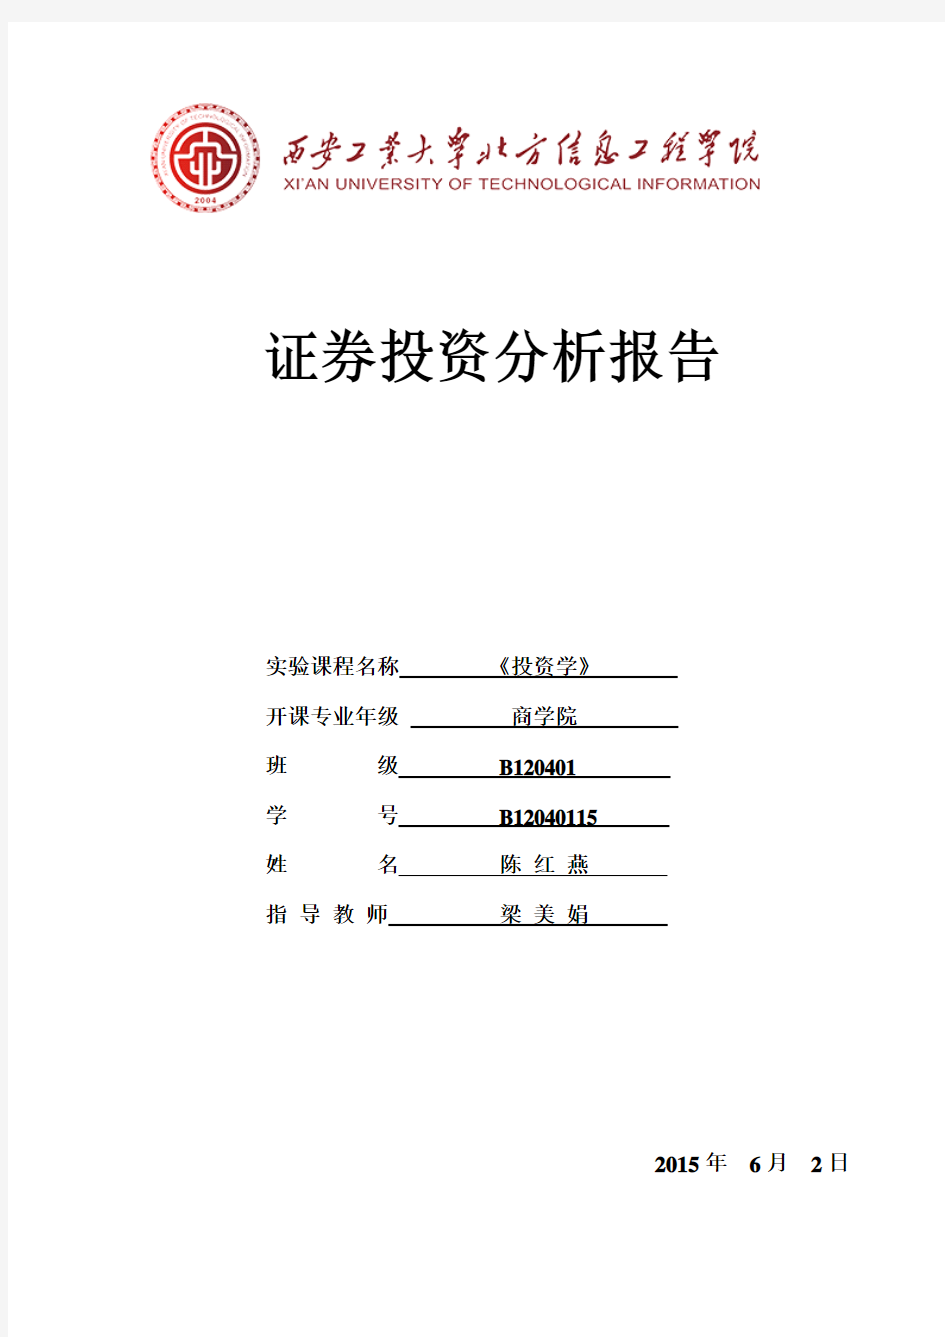 上海电力股票分析